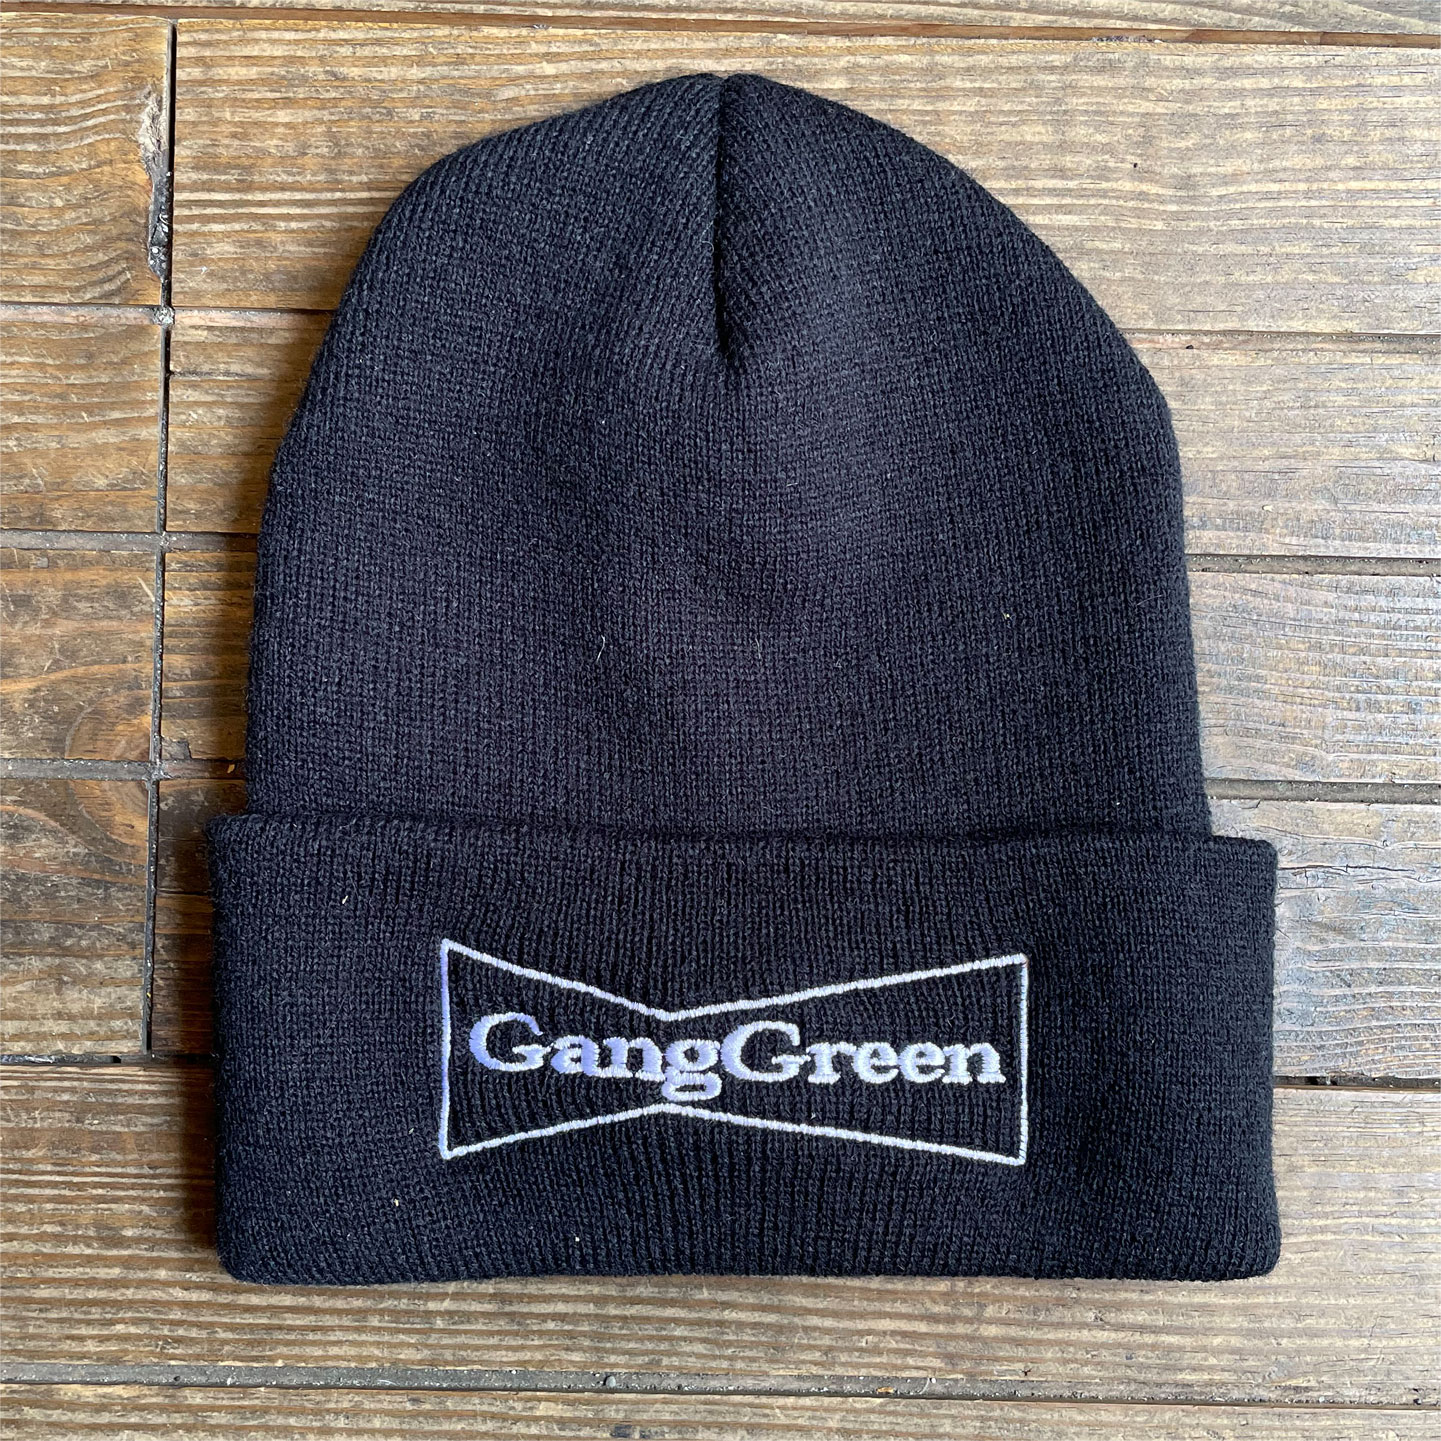 GANG GREEN ニット帽 オフィシャル